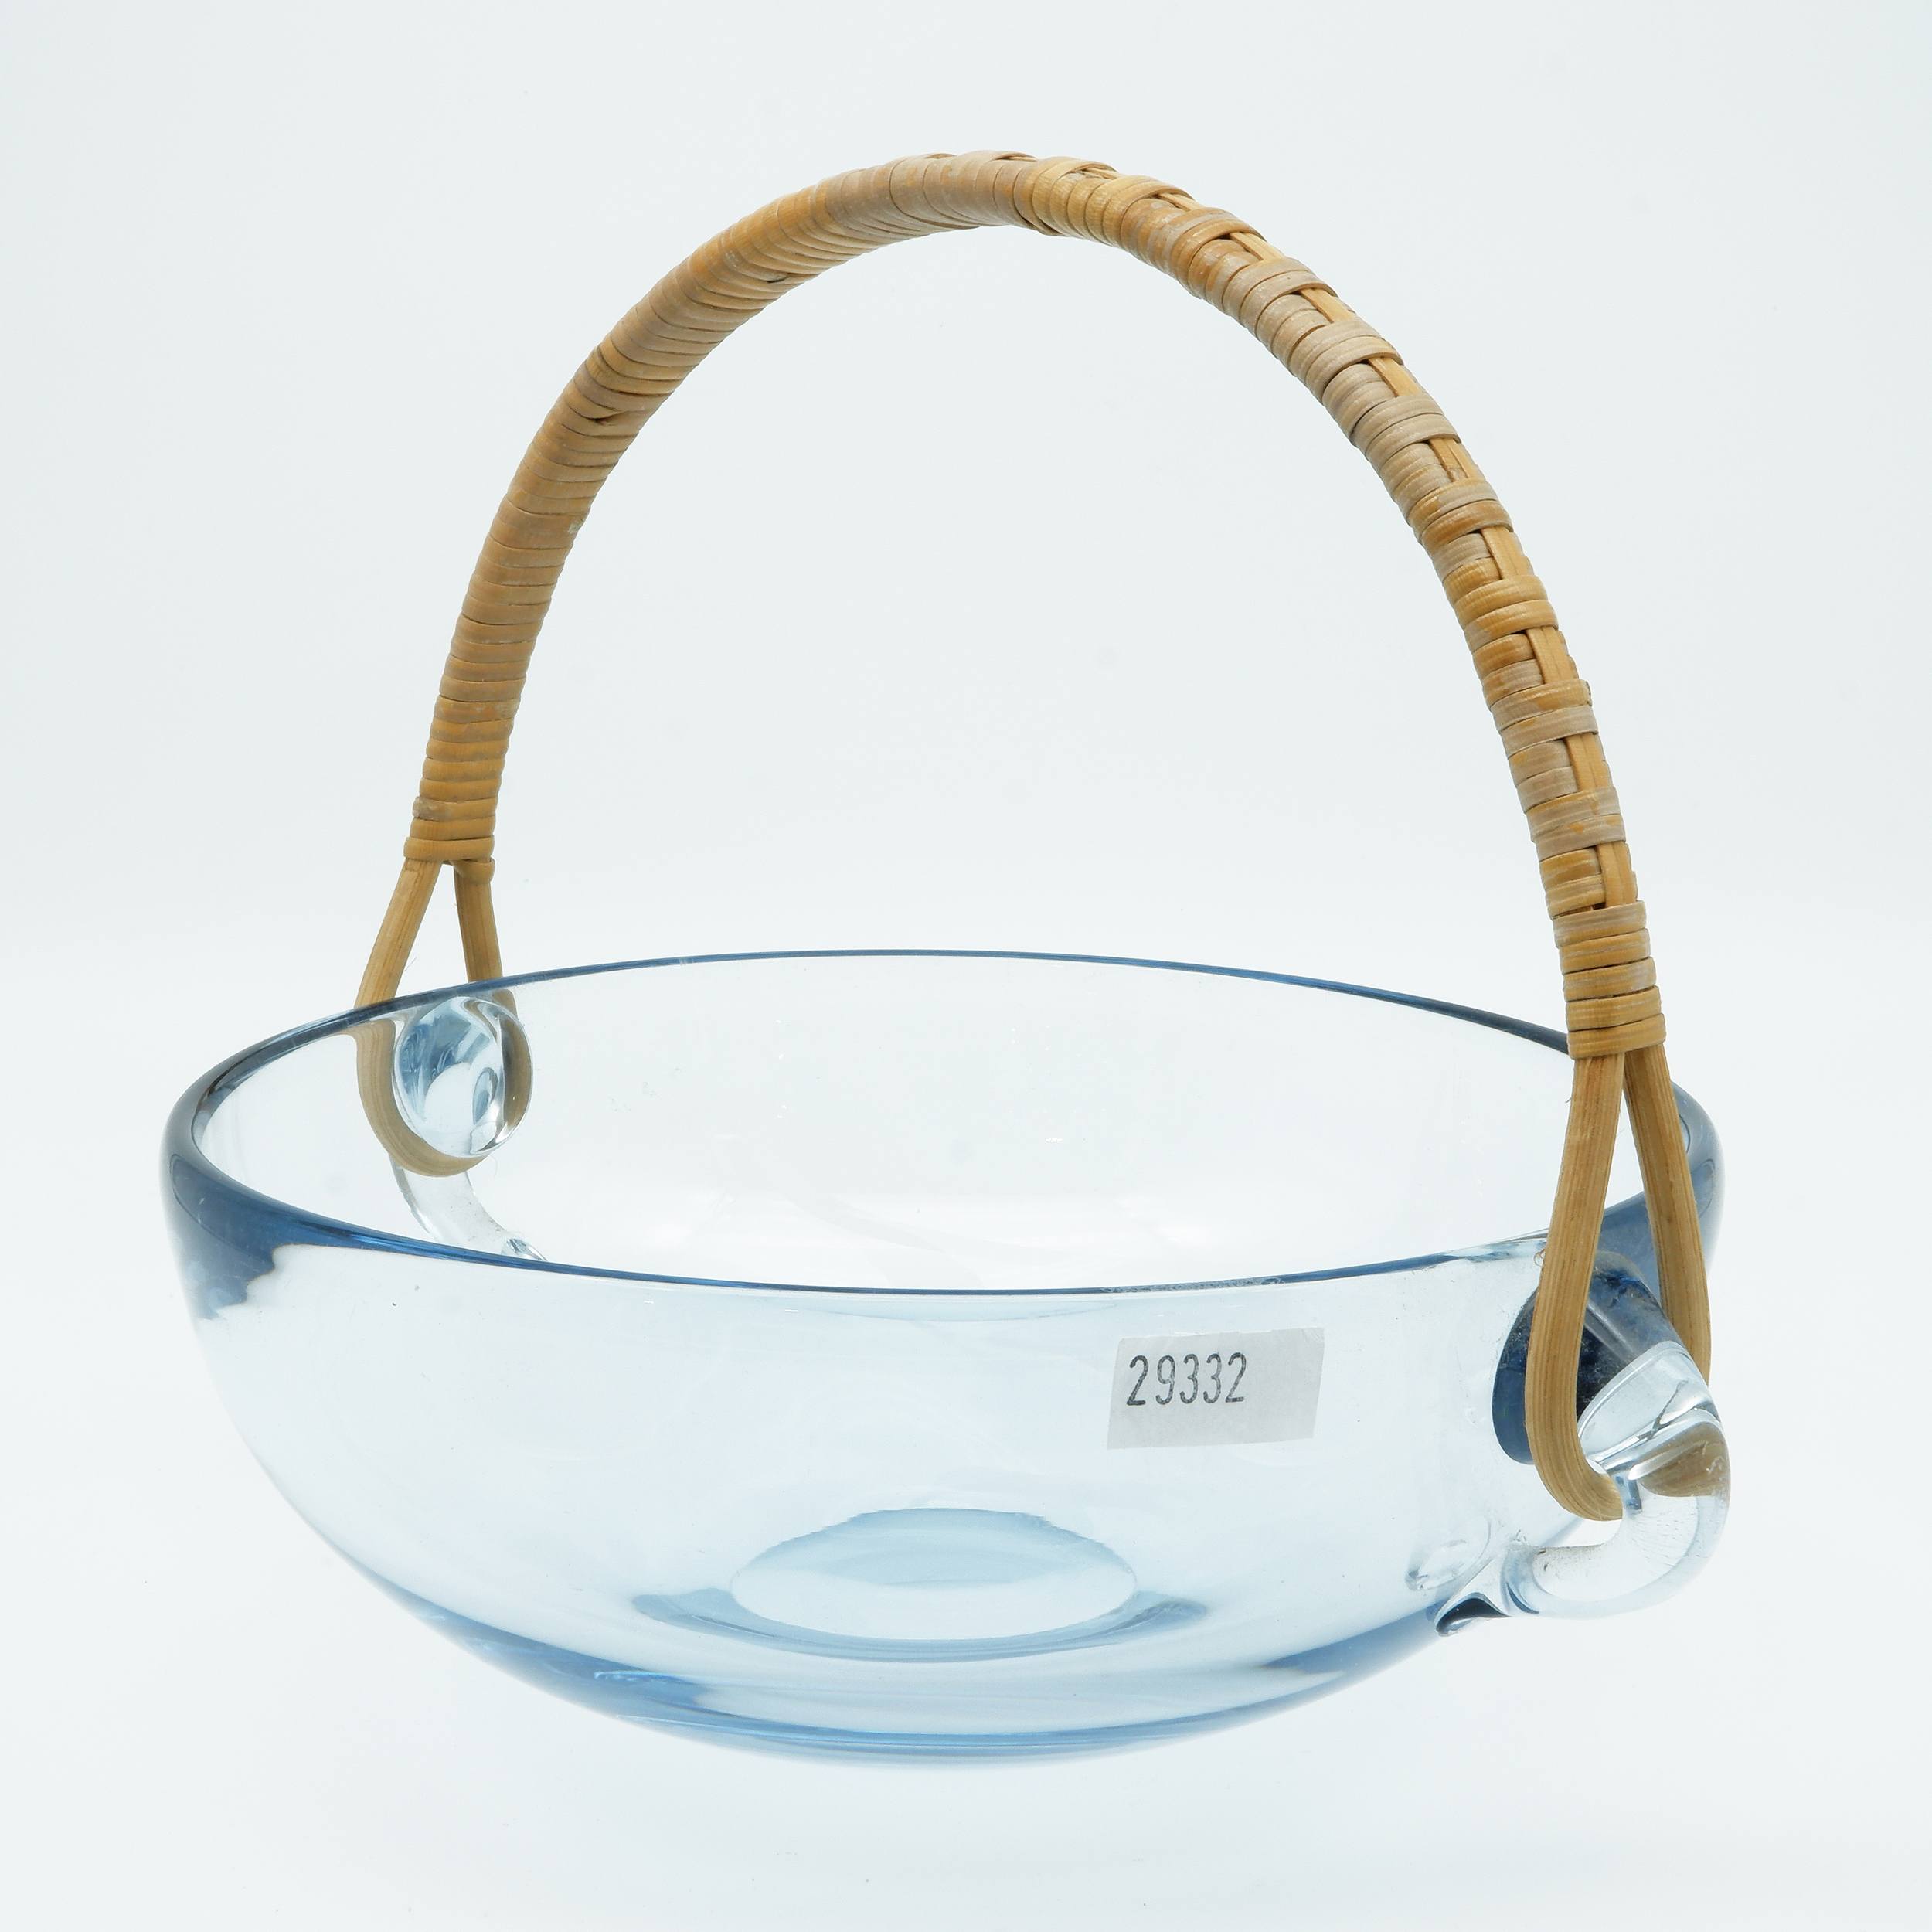 'Vintage Holmegaard Blue Studio Glass Bowl with Cane Handle - Designed by Per Lutken 1962 - Signed to Base'